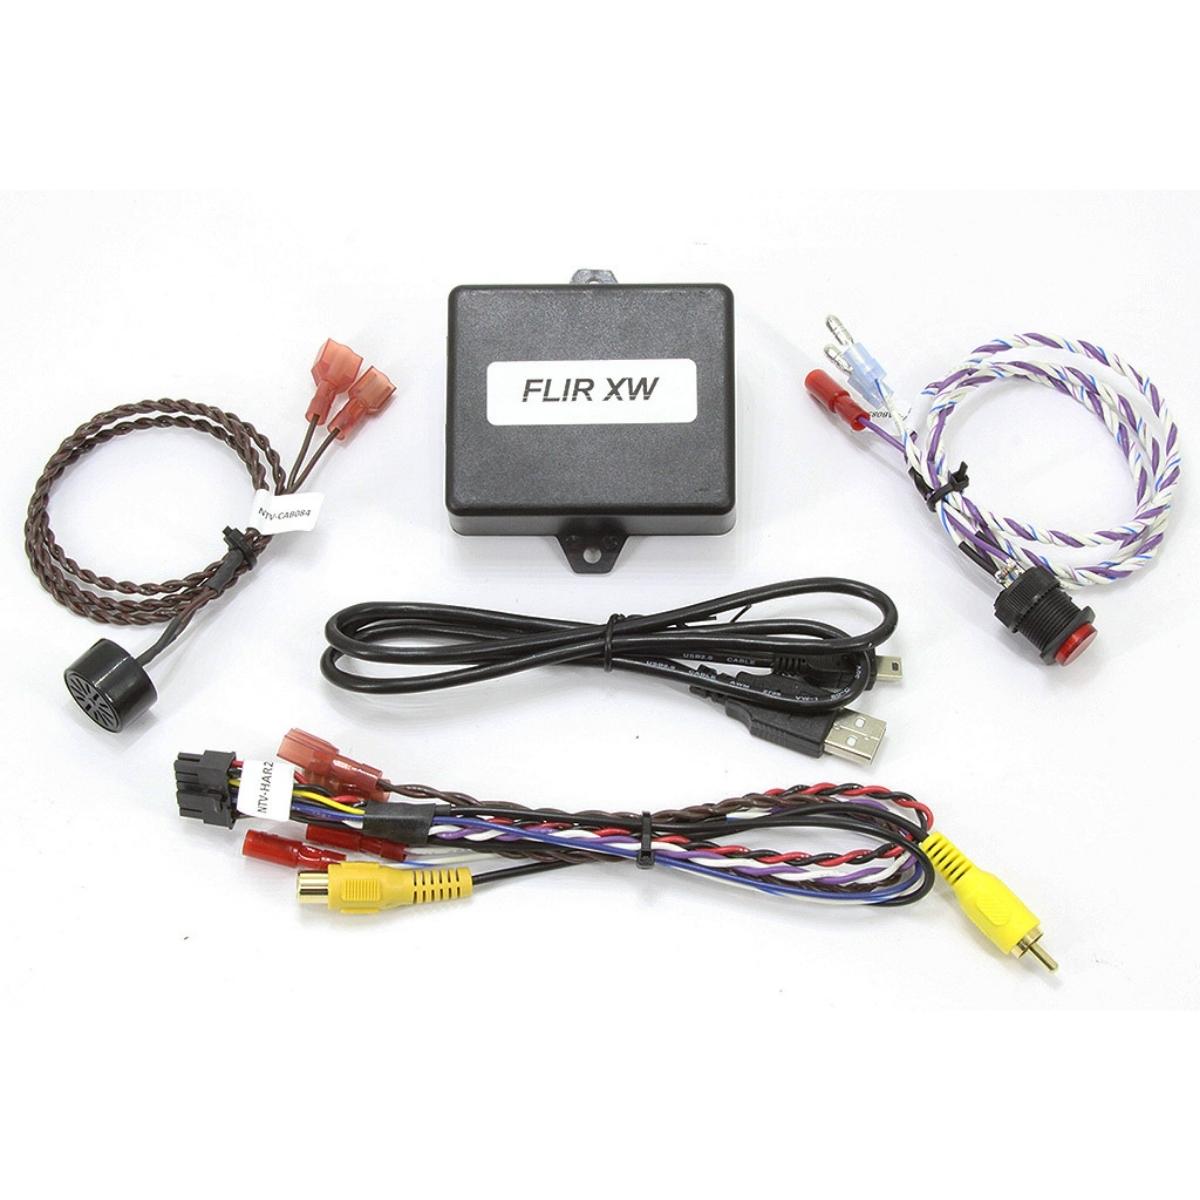 NAV-TV Kit 588 FLIR-XW